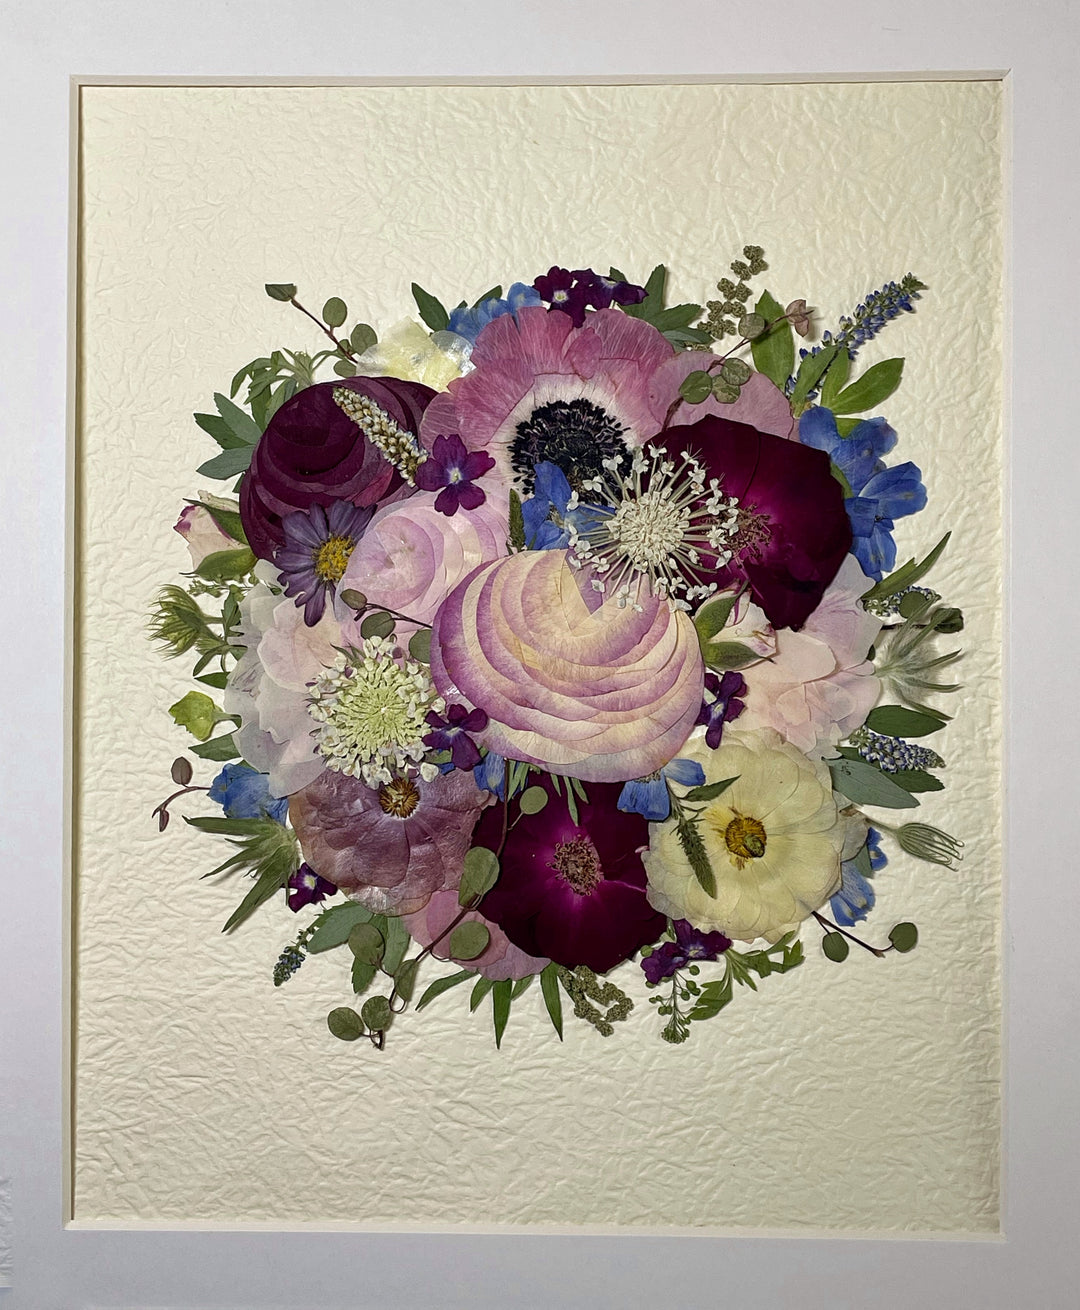 details of rose petals formed pressed flower frame art